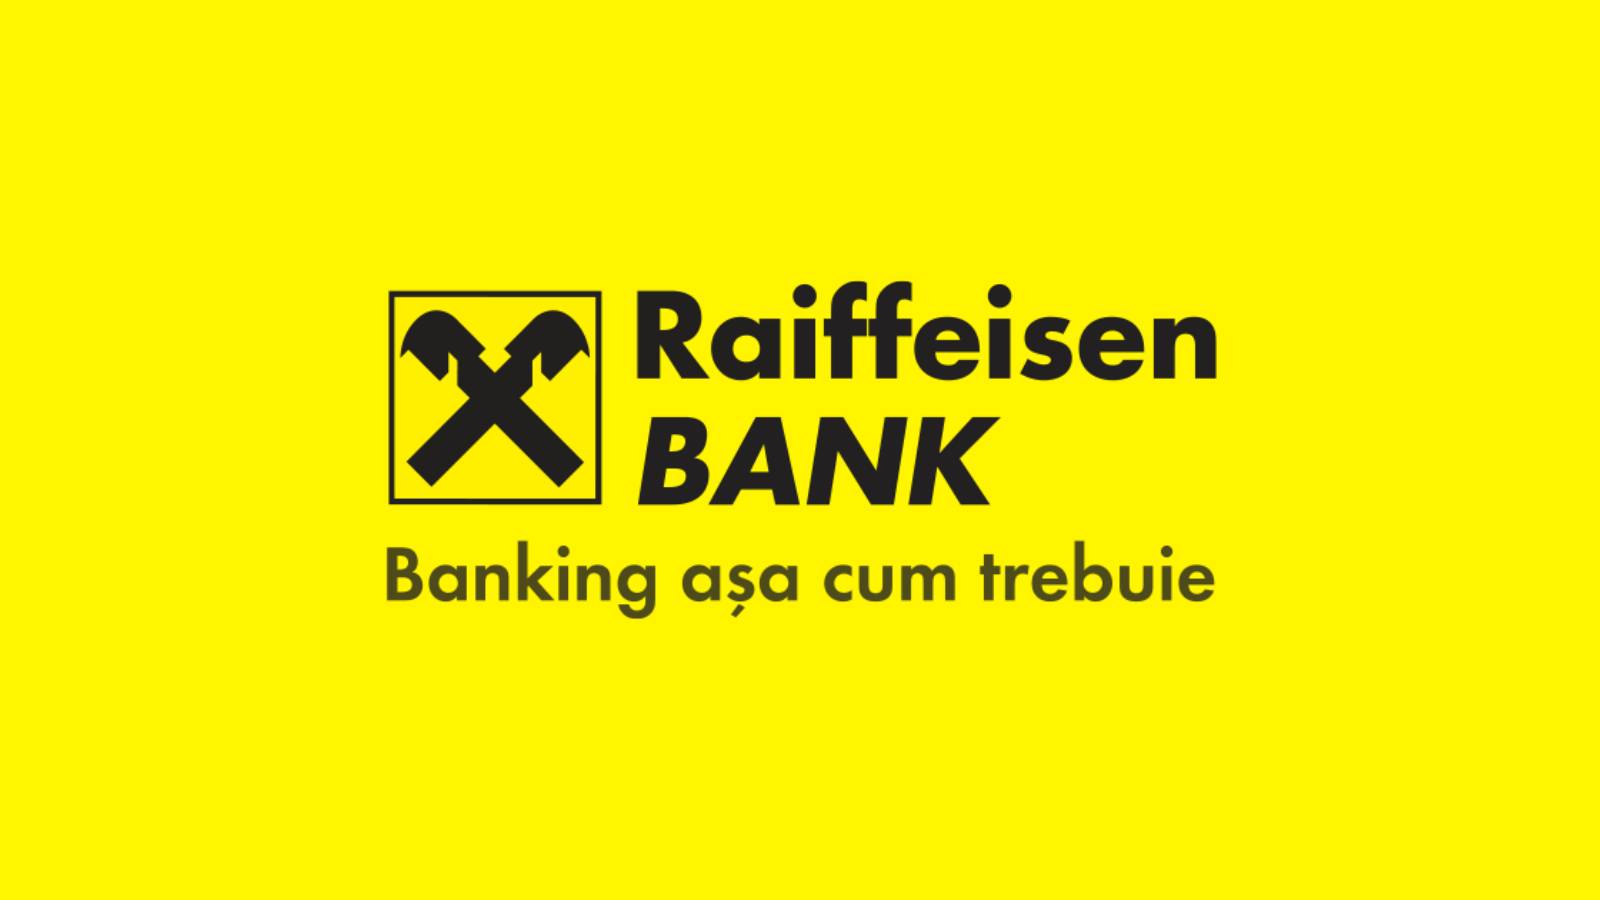 Raiffeisen Bank Información oficial GRATUITA para clientes rumanos hoy